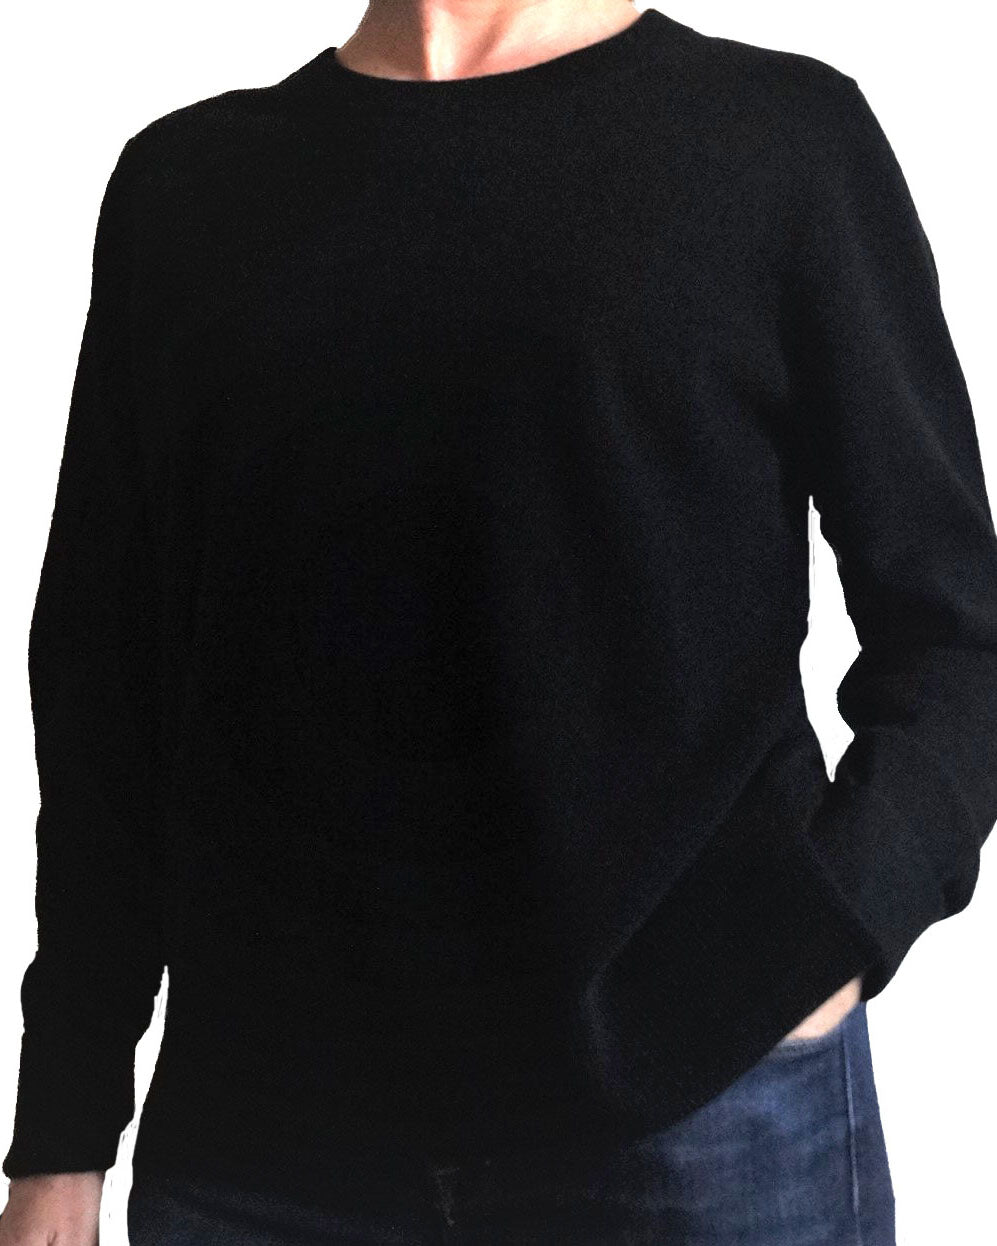 black cashmere jumper ireland